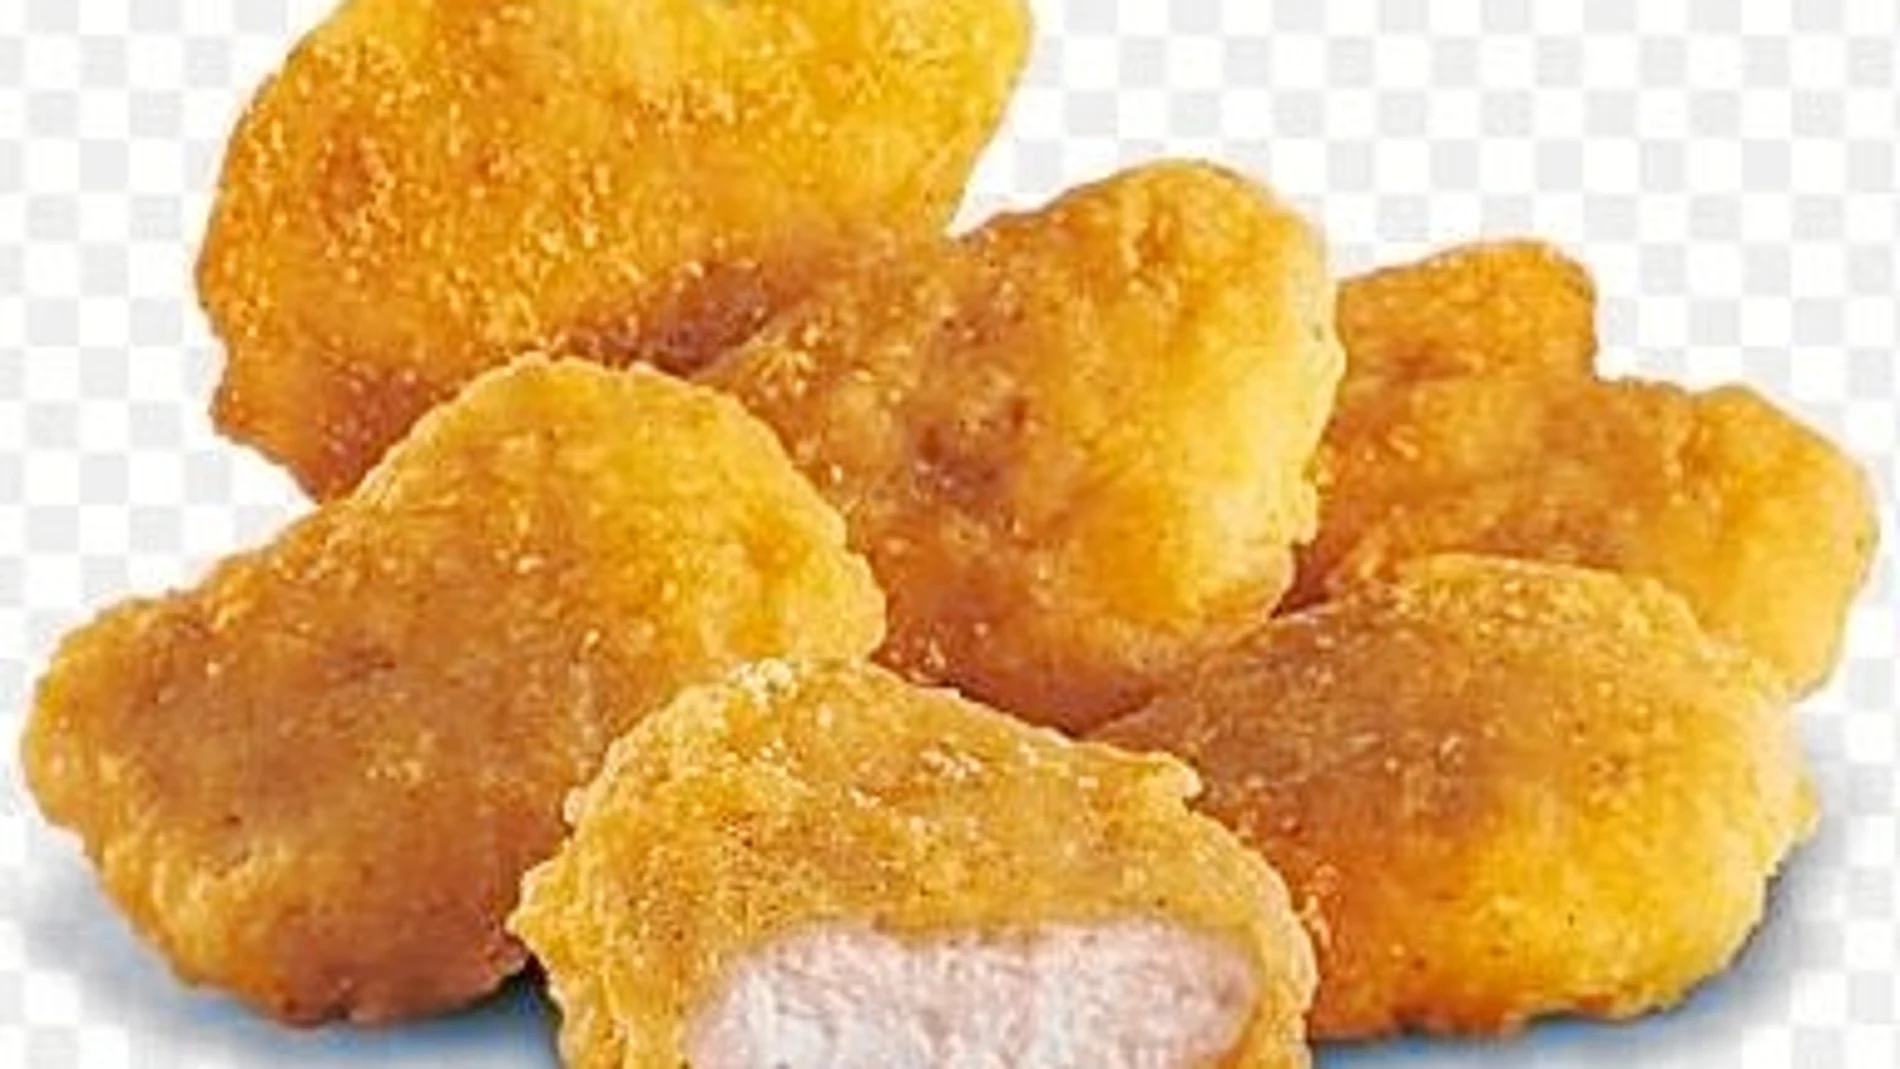 El calorímetro: 6 nuggets de pollo